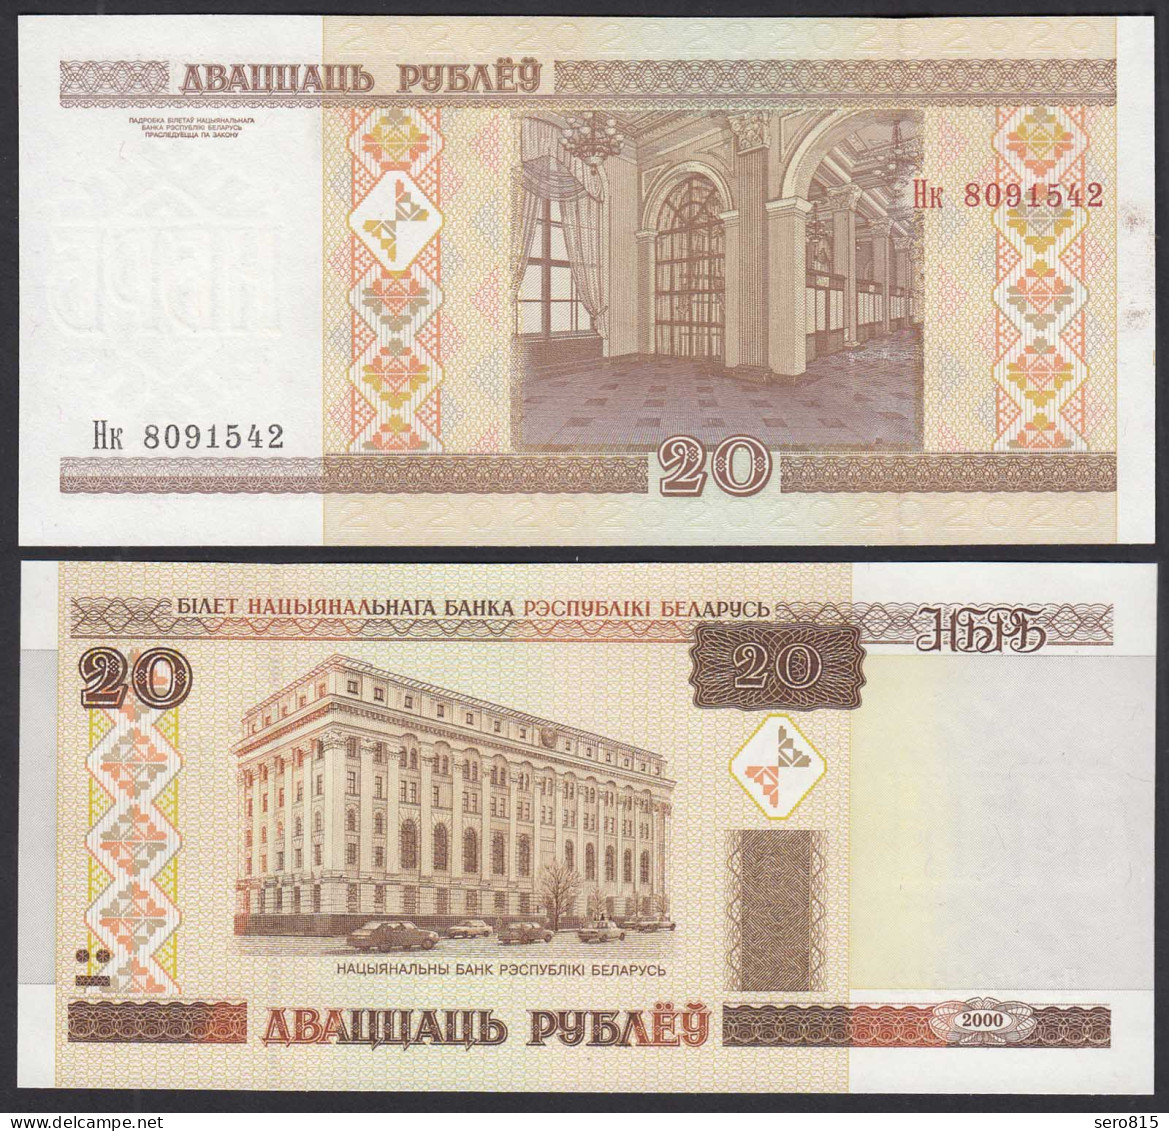 Weißrussland - Belarus 20 Rubel 2000 UNC (1) Pick 24  (30166 - Autres - Europe